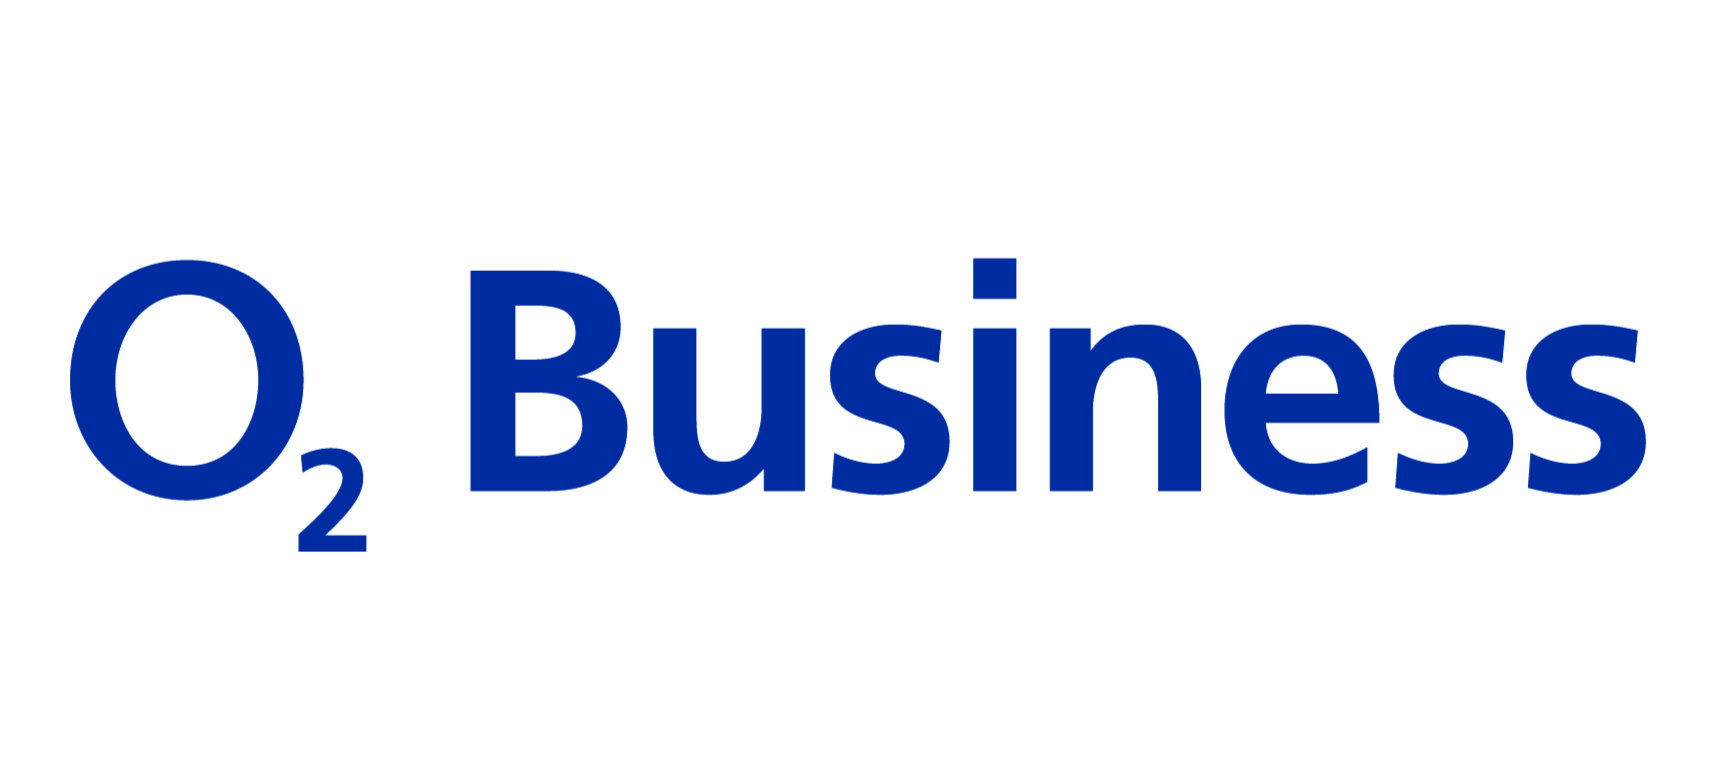 o2 Business Logo